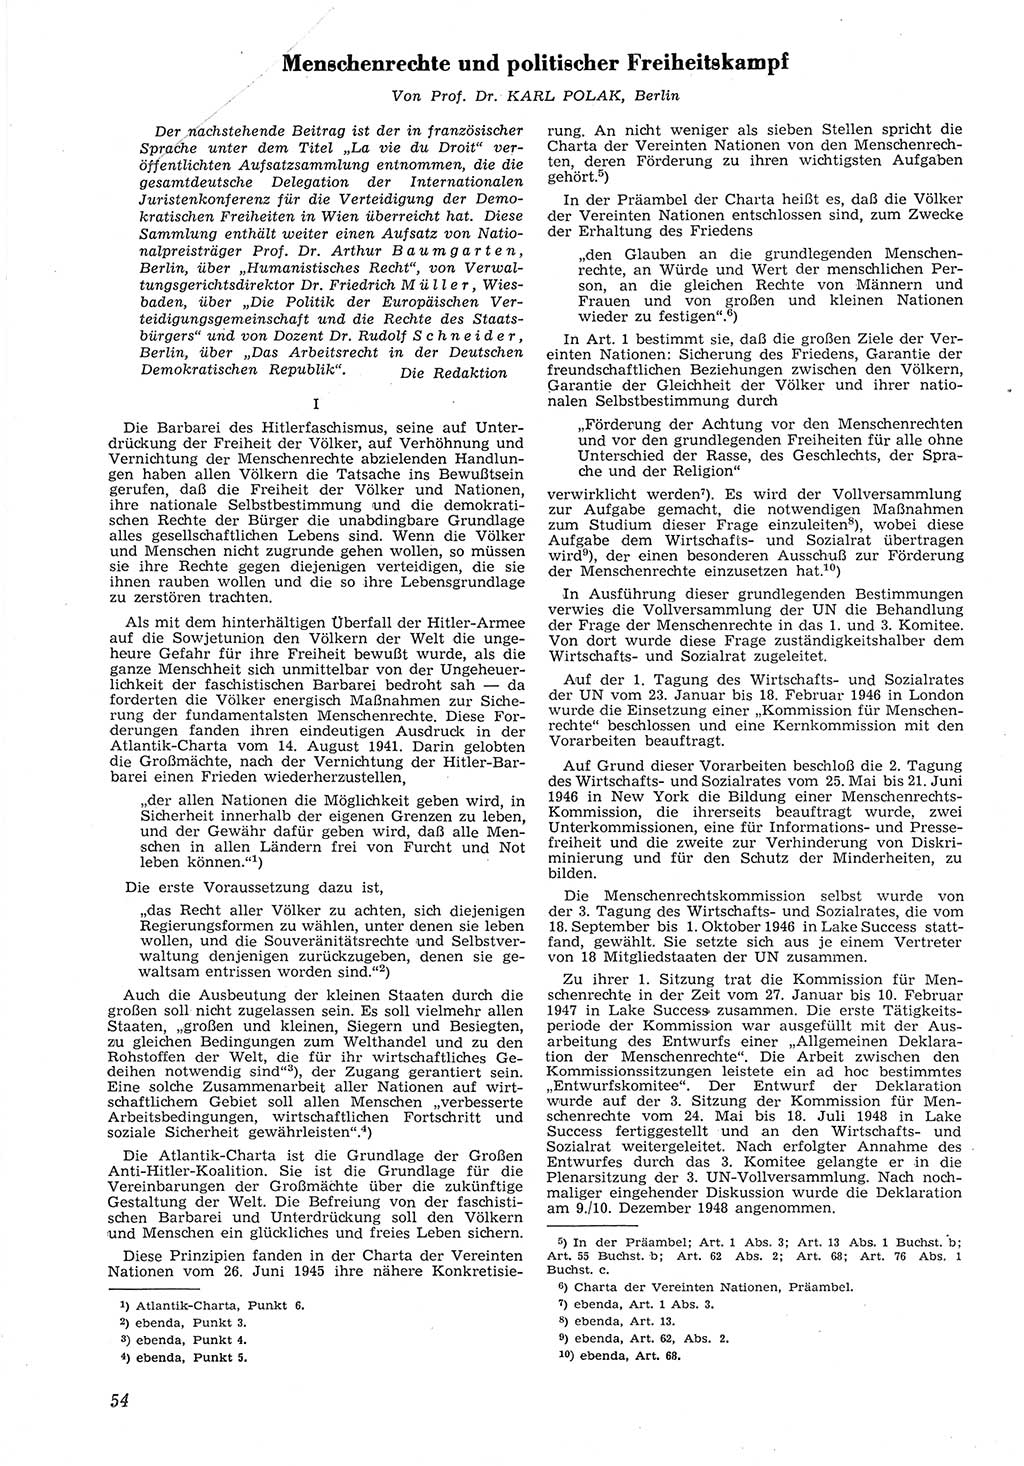 Neue Justiz (NJ), Zeitschrift für Recht und Rechtswissenschaft [Deutsche Demokratische Republik (DDR)], 8. Jahrgang 1954, Seite 54 (NJ DDR 1954, S. 54)